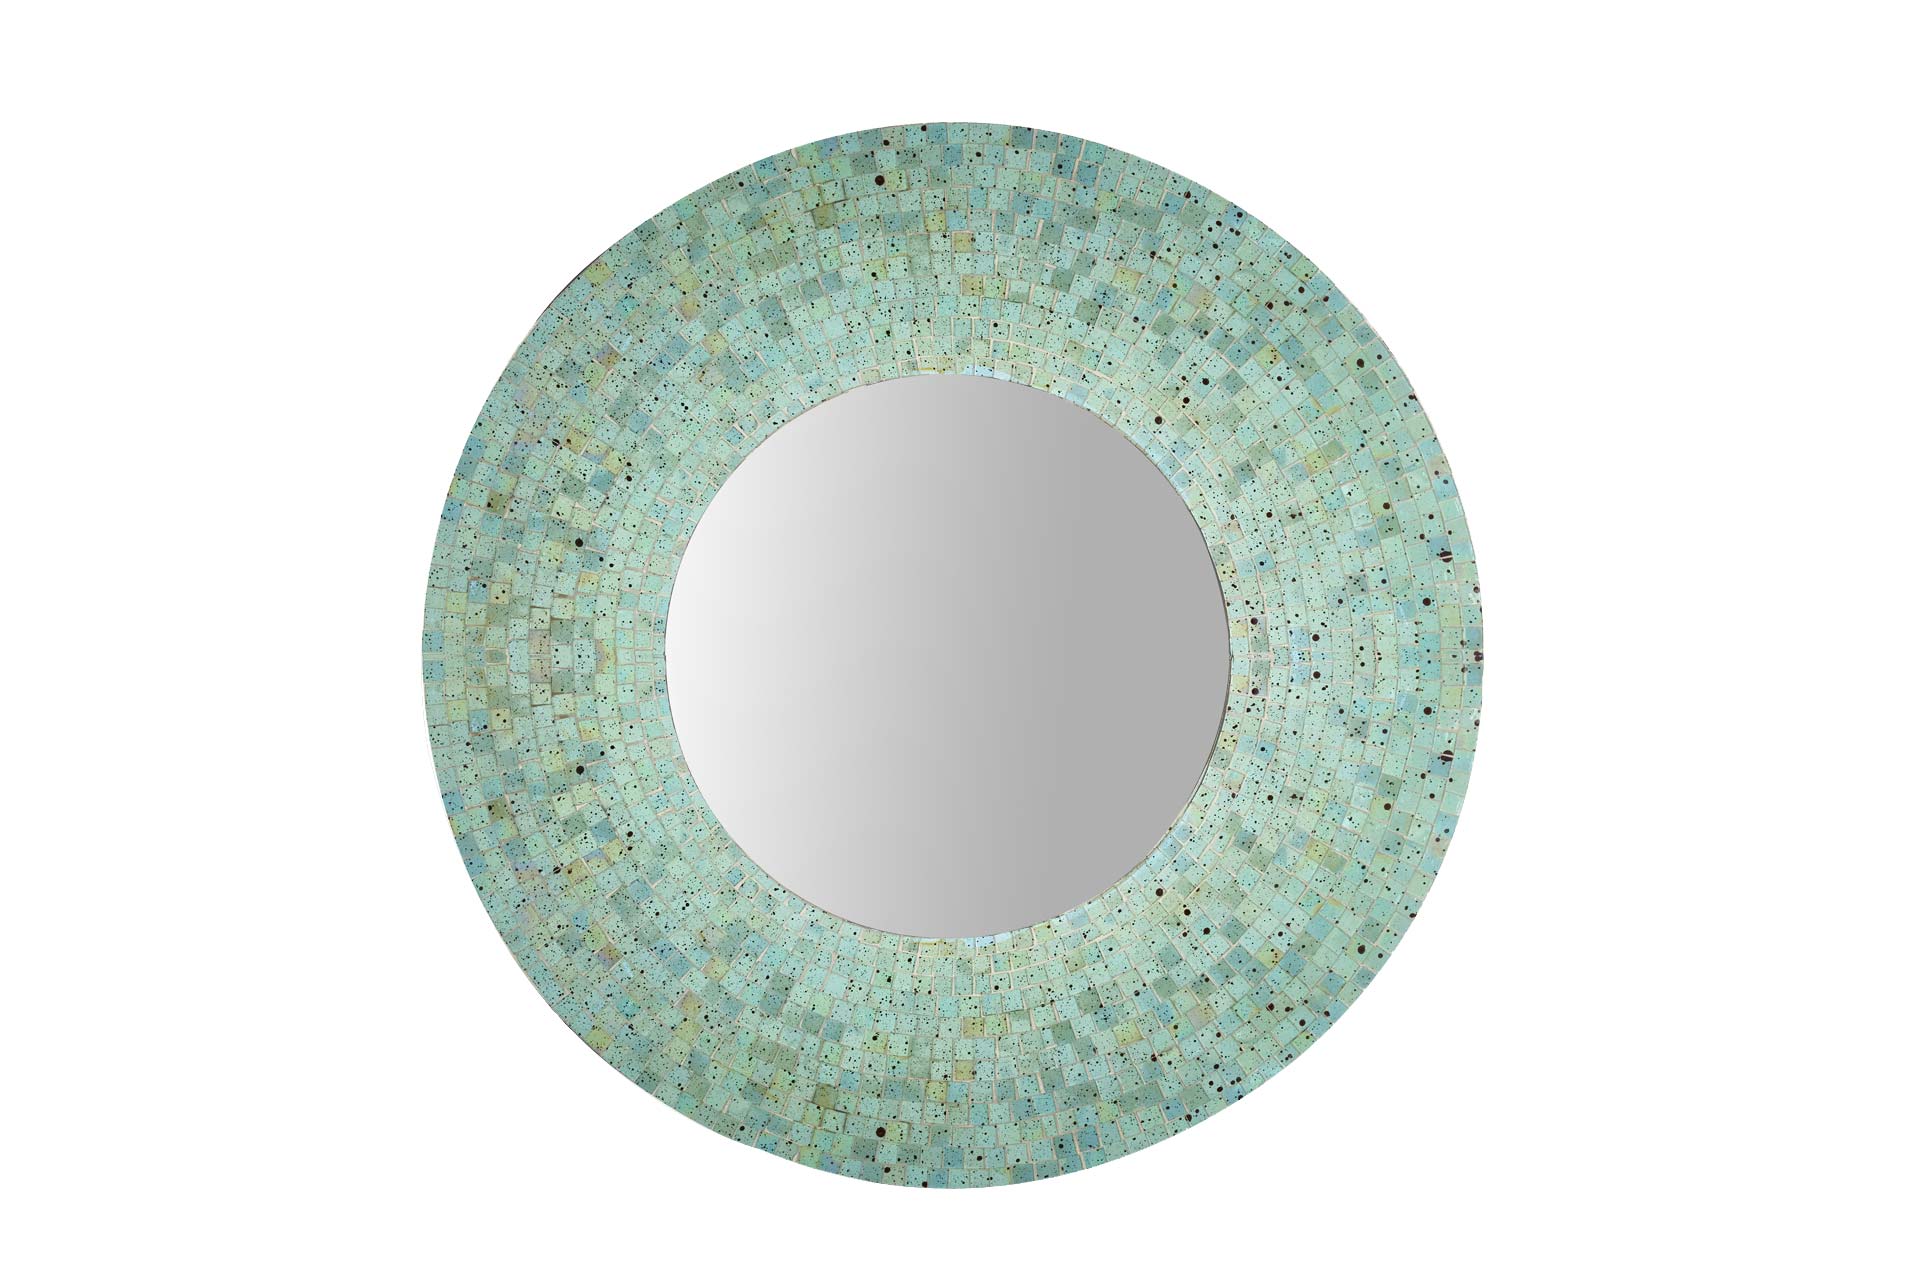 Spiegel grün - Glasmosaik